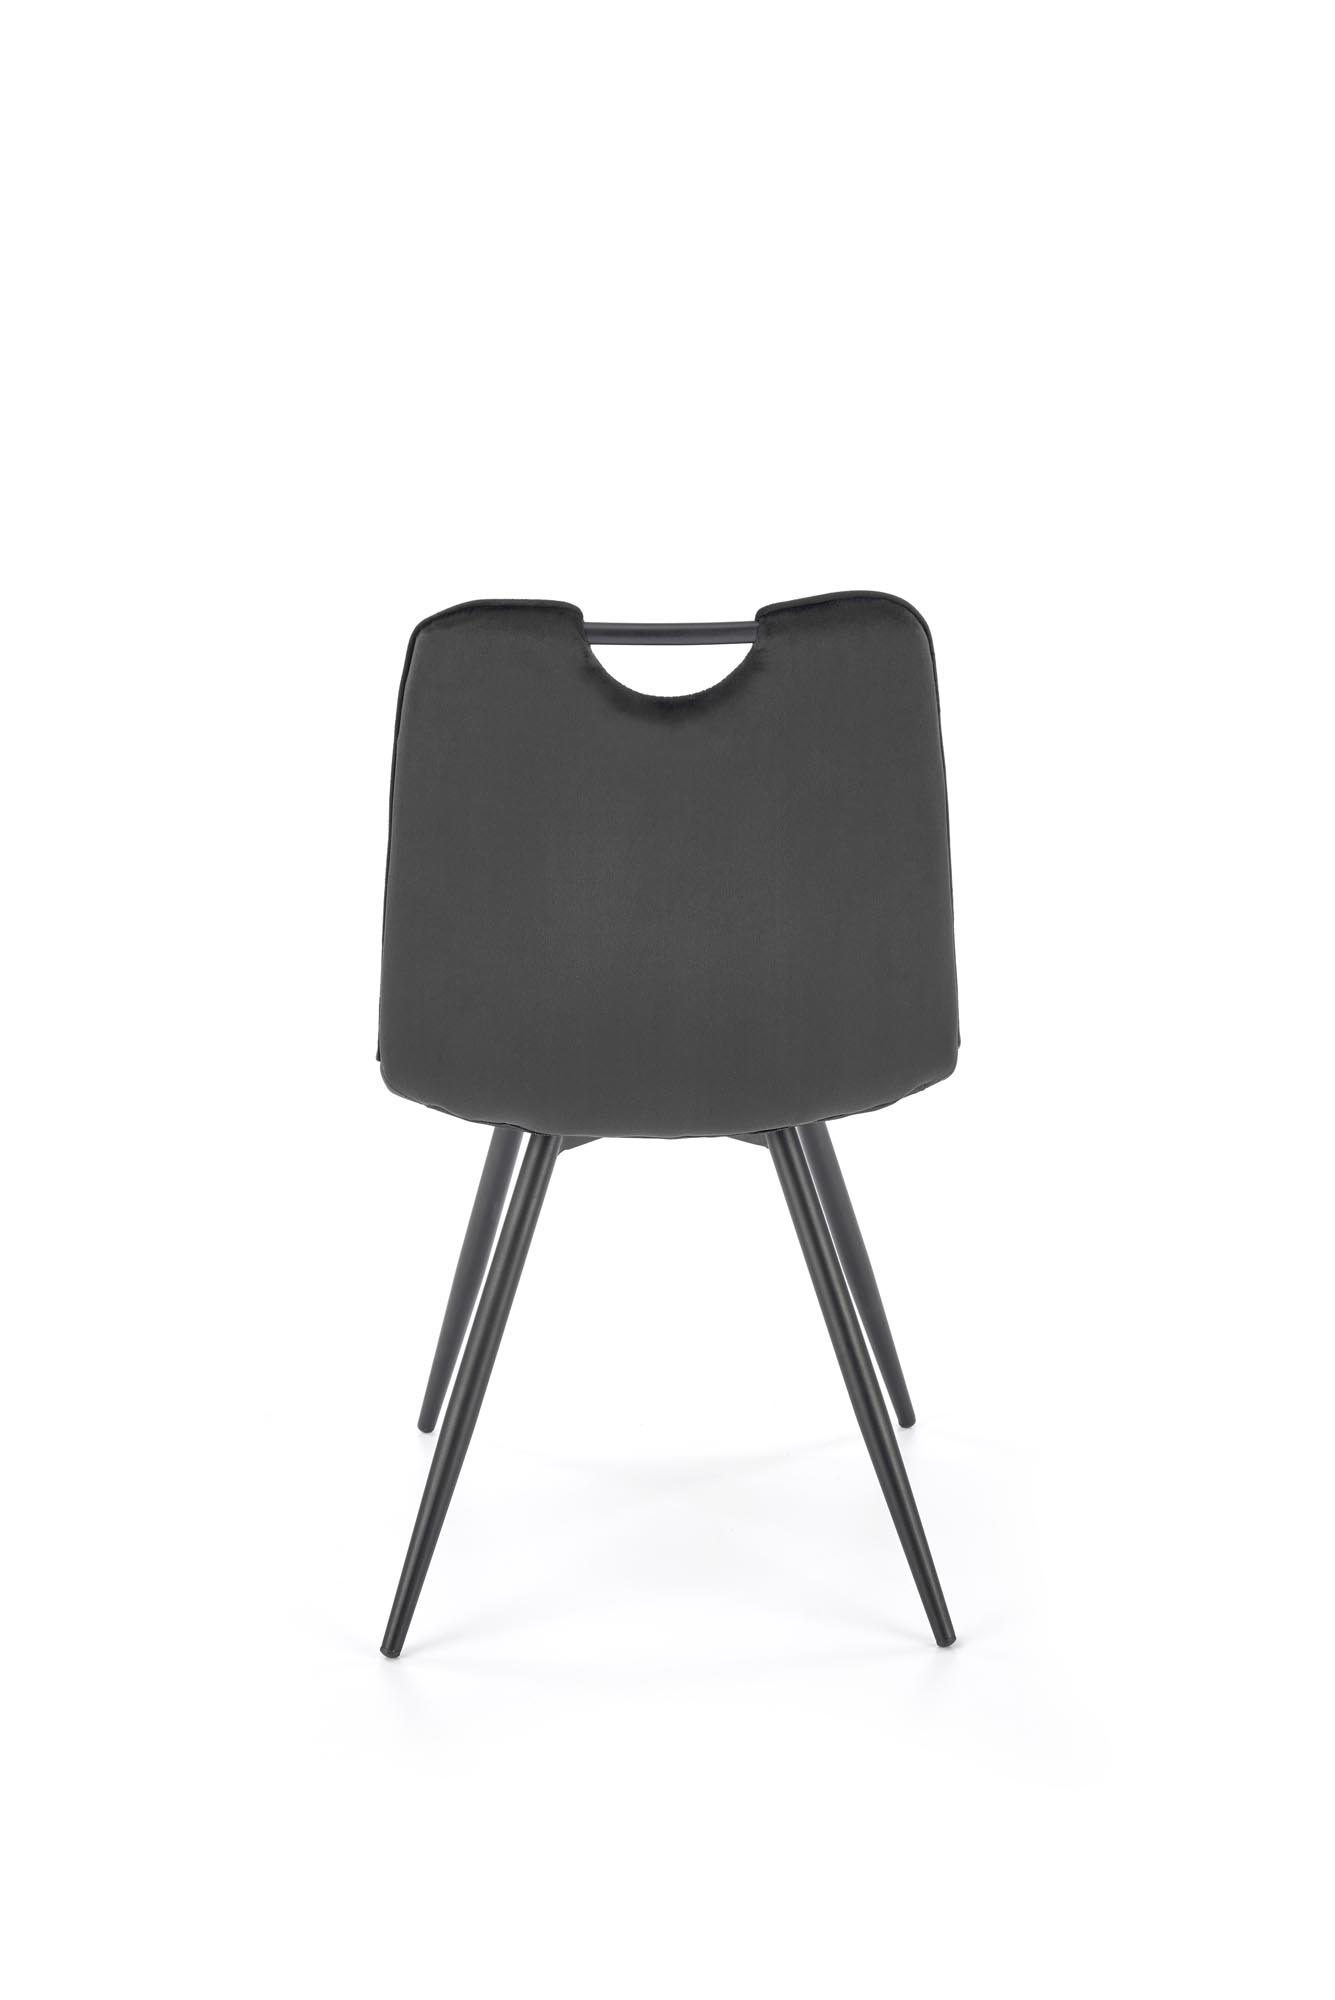 K521 Židle Fekete Židle čalouněné k521 - Fekete